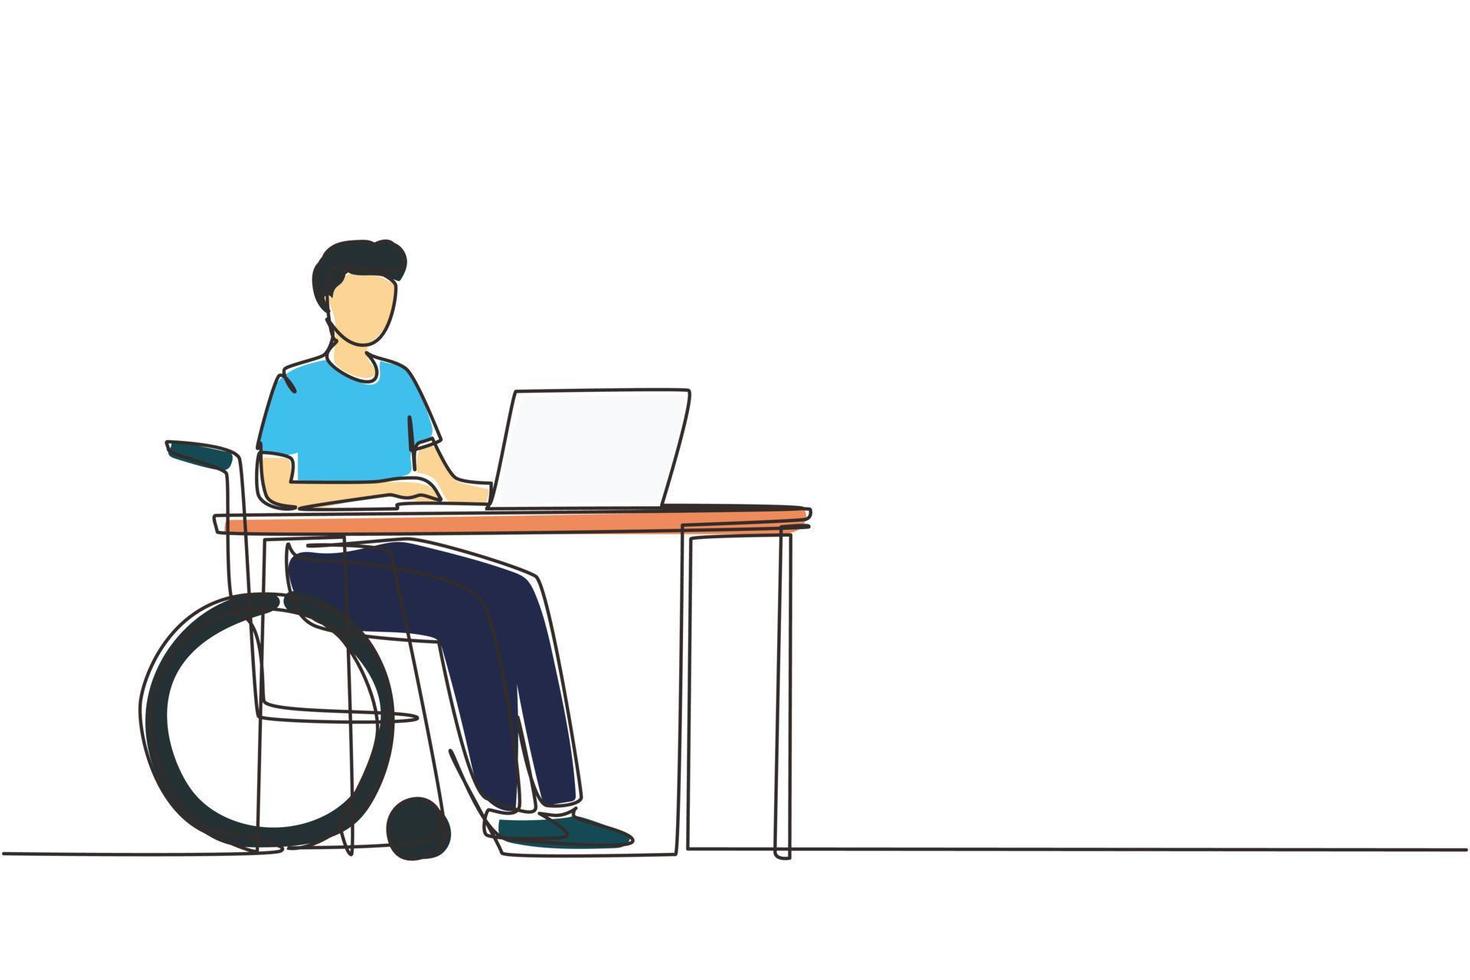 dibujo continuo de una línea joven usa silla de ruedas y trabaja con computadora en la oficina. trabajo en línea y puesta en marcha. discapacidad física y sociedad. ilustración gráfica de vector de diseño de dibujo de una sola línea